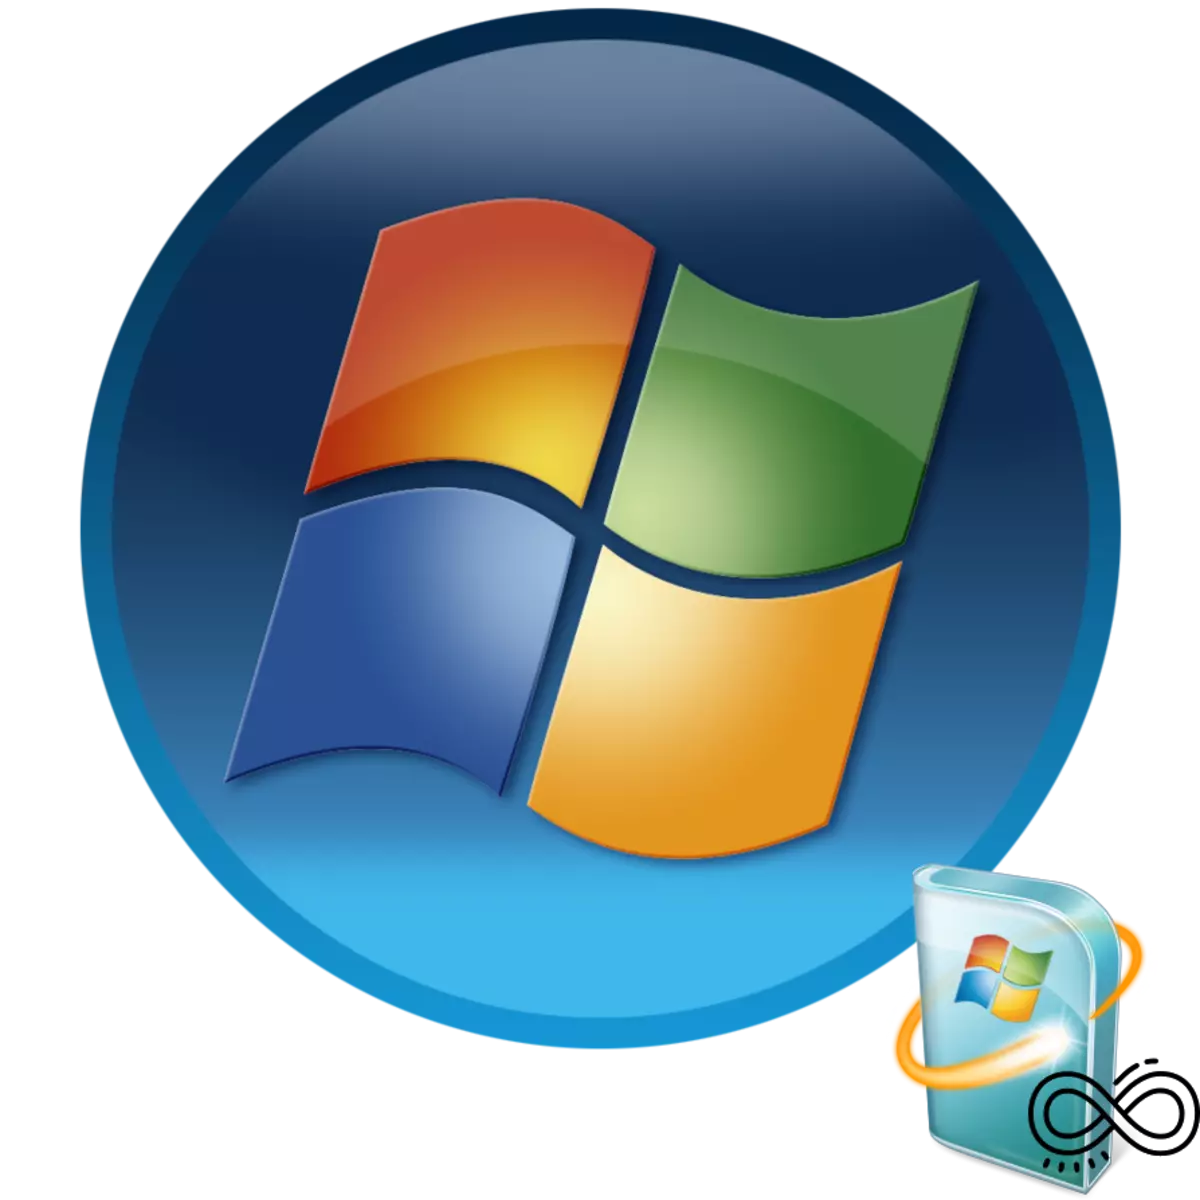 Wa fun wiwa ailopin fun awọn imudojuiwọn ni Windows 7